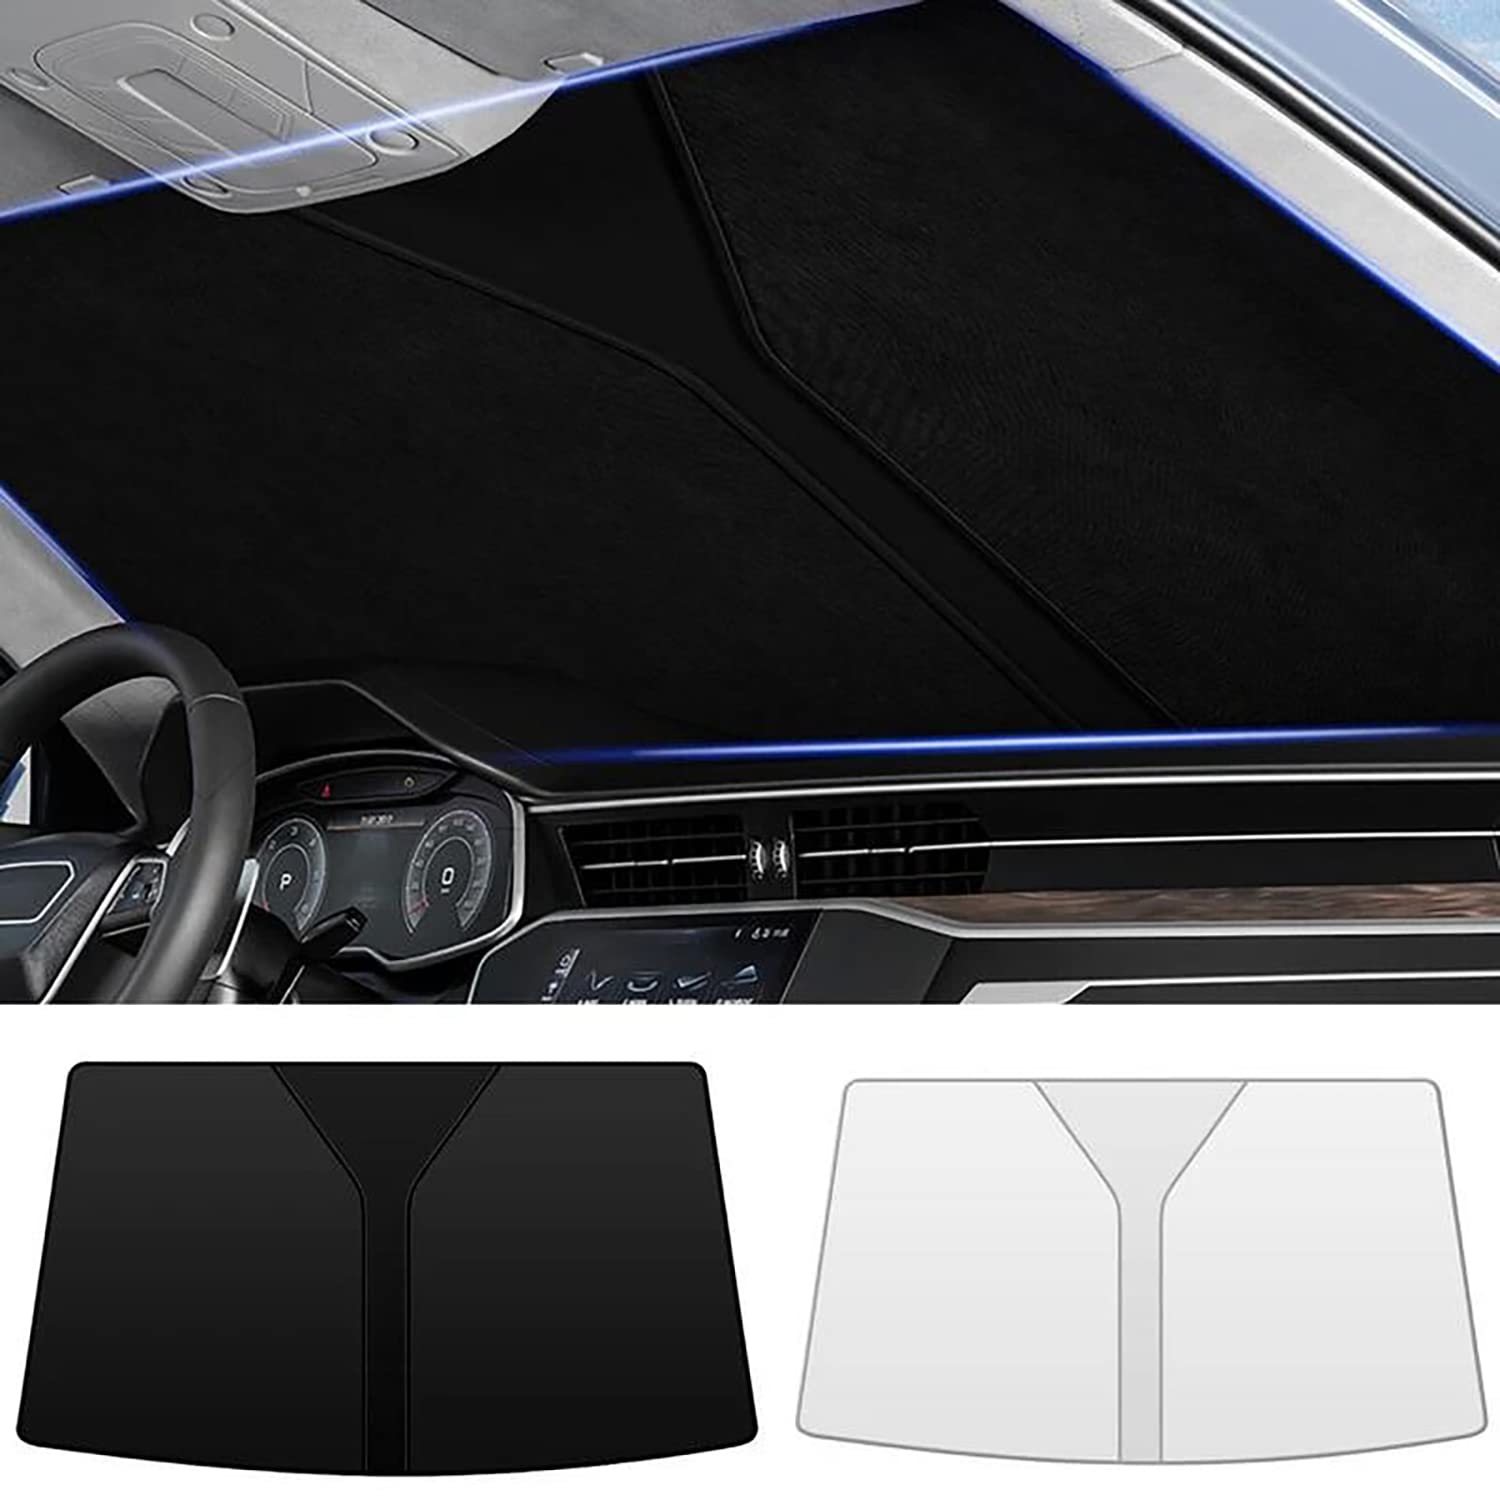 Frontscheiben Sonnenschutz Passend für Hyundai i30 III 2018 2019 2020-2023, Hitzeschutz Auto UV-Reflexion, Faltbares Design, Einfache Lagerung,- Silver von TANEND